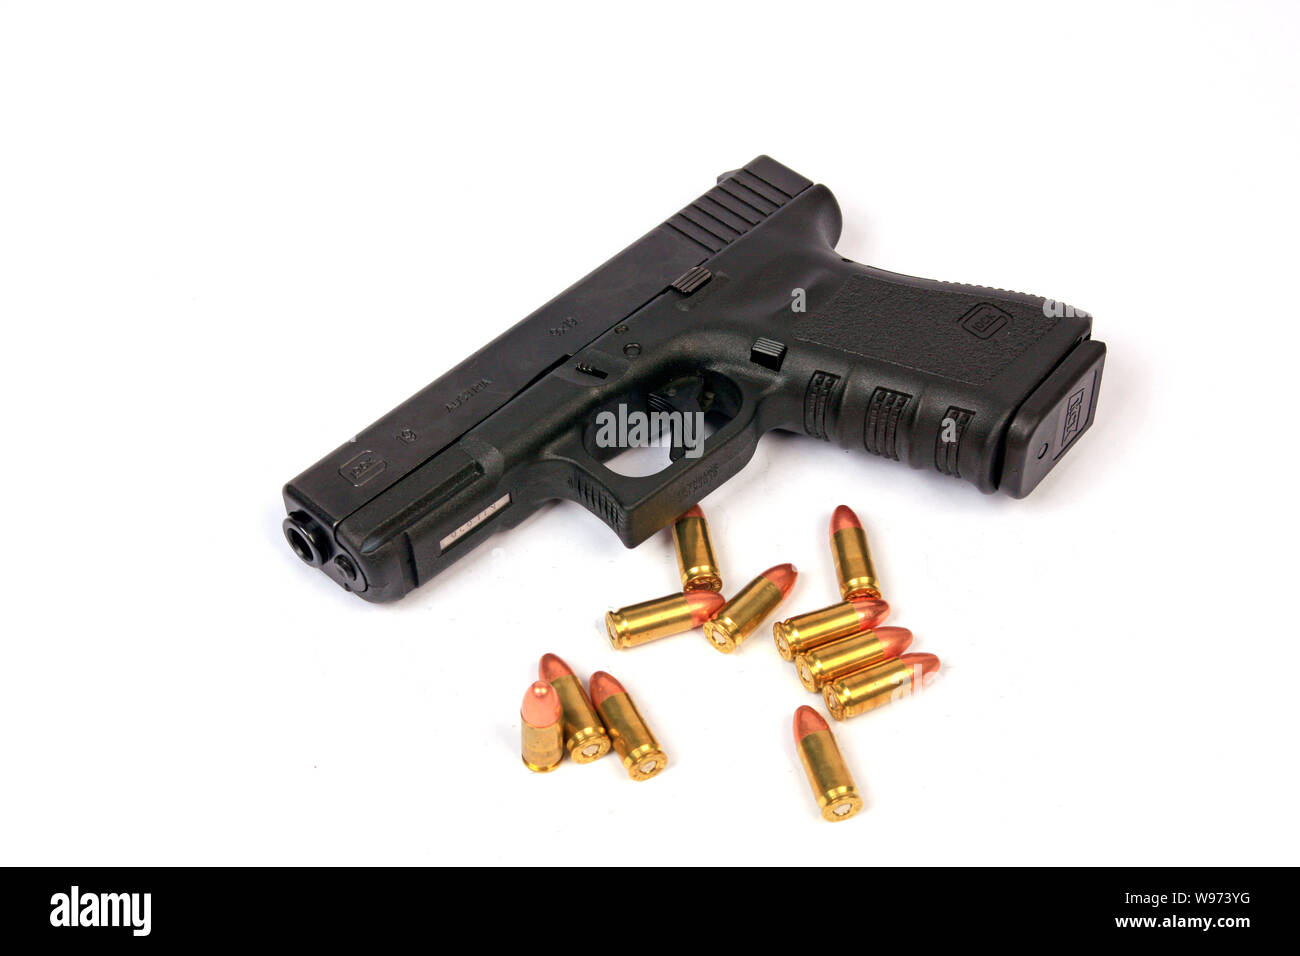 Glock 19 9mm pistola semiautomática con un puñado de 9mm Luger munición Foto de stock